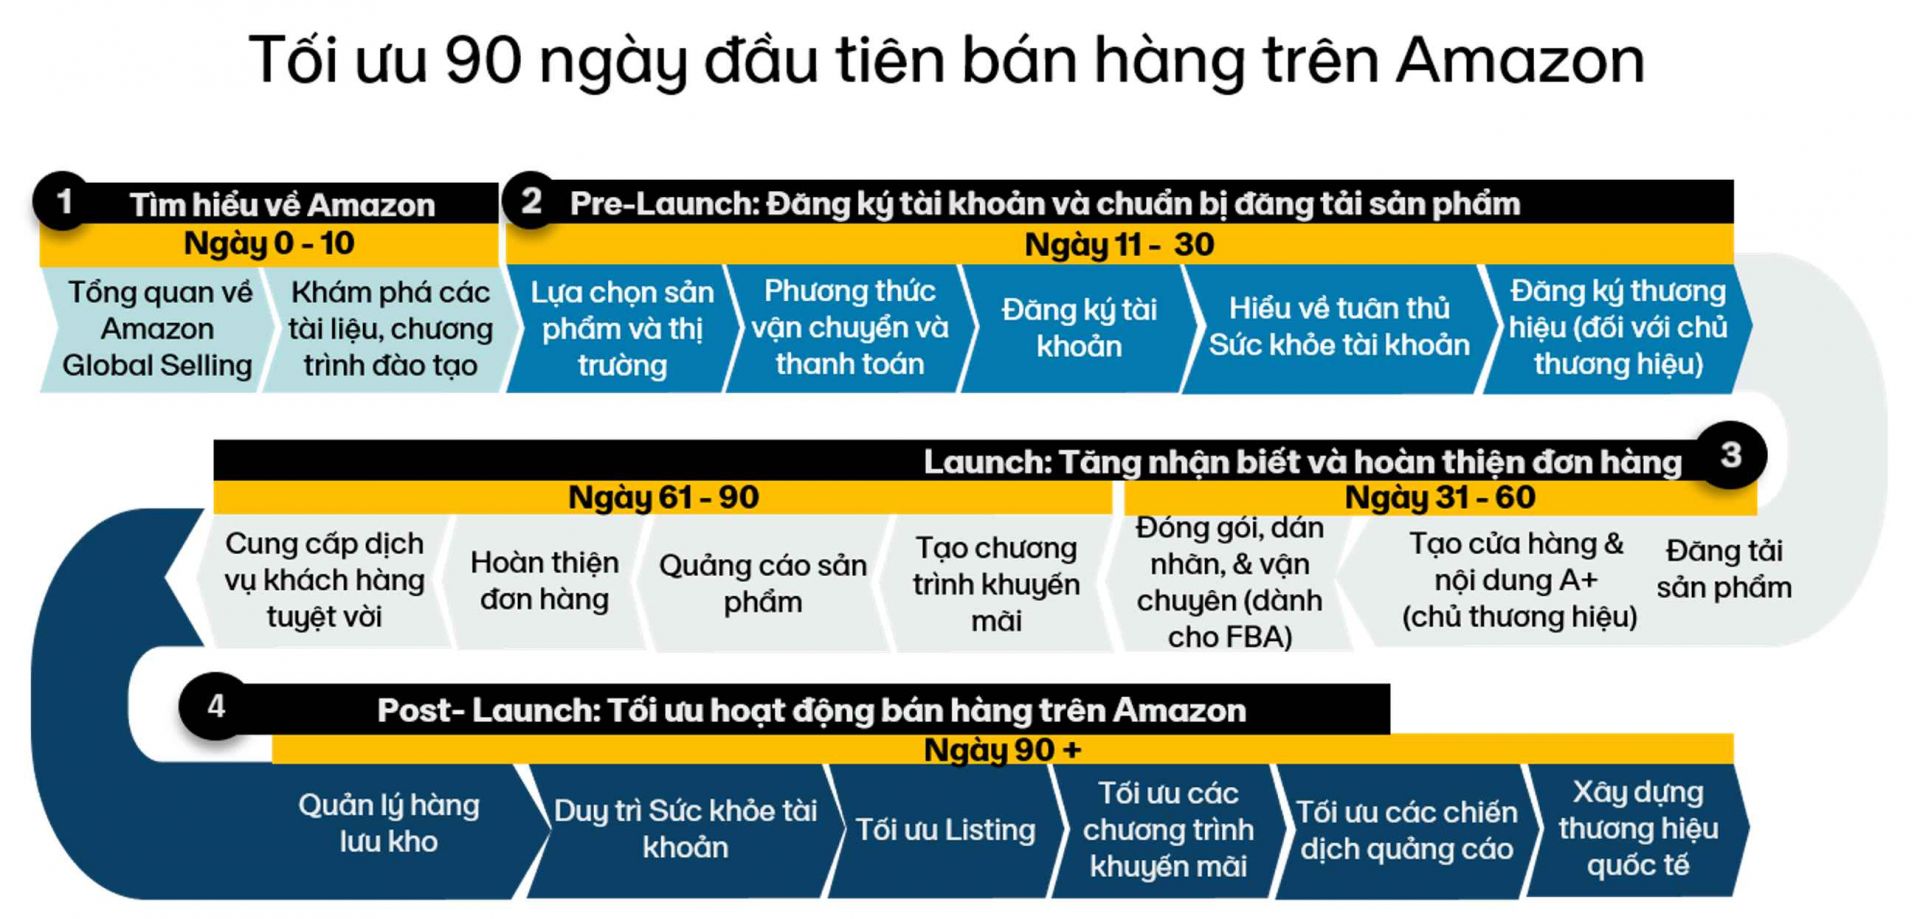 Chương trình bệ phóng "đầy tham vọng" của Amazon nhằm hỗ trợ các doanh nghiệp Việt bắt tay vào chinh phục thương mại điện tử xuyên biên giới